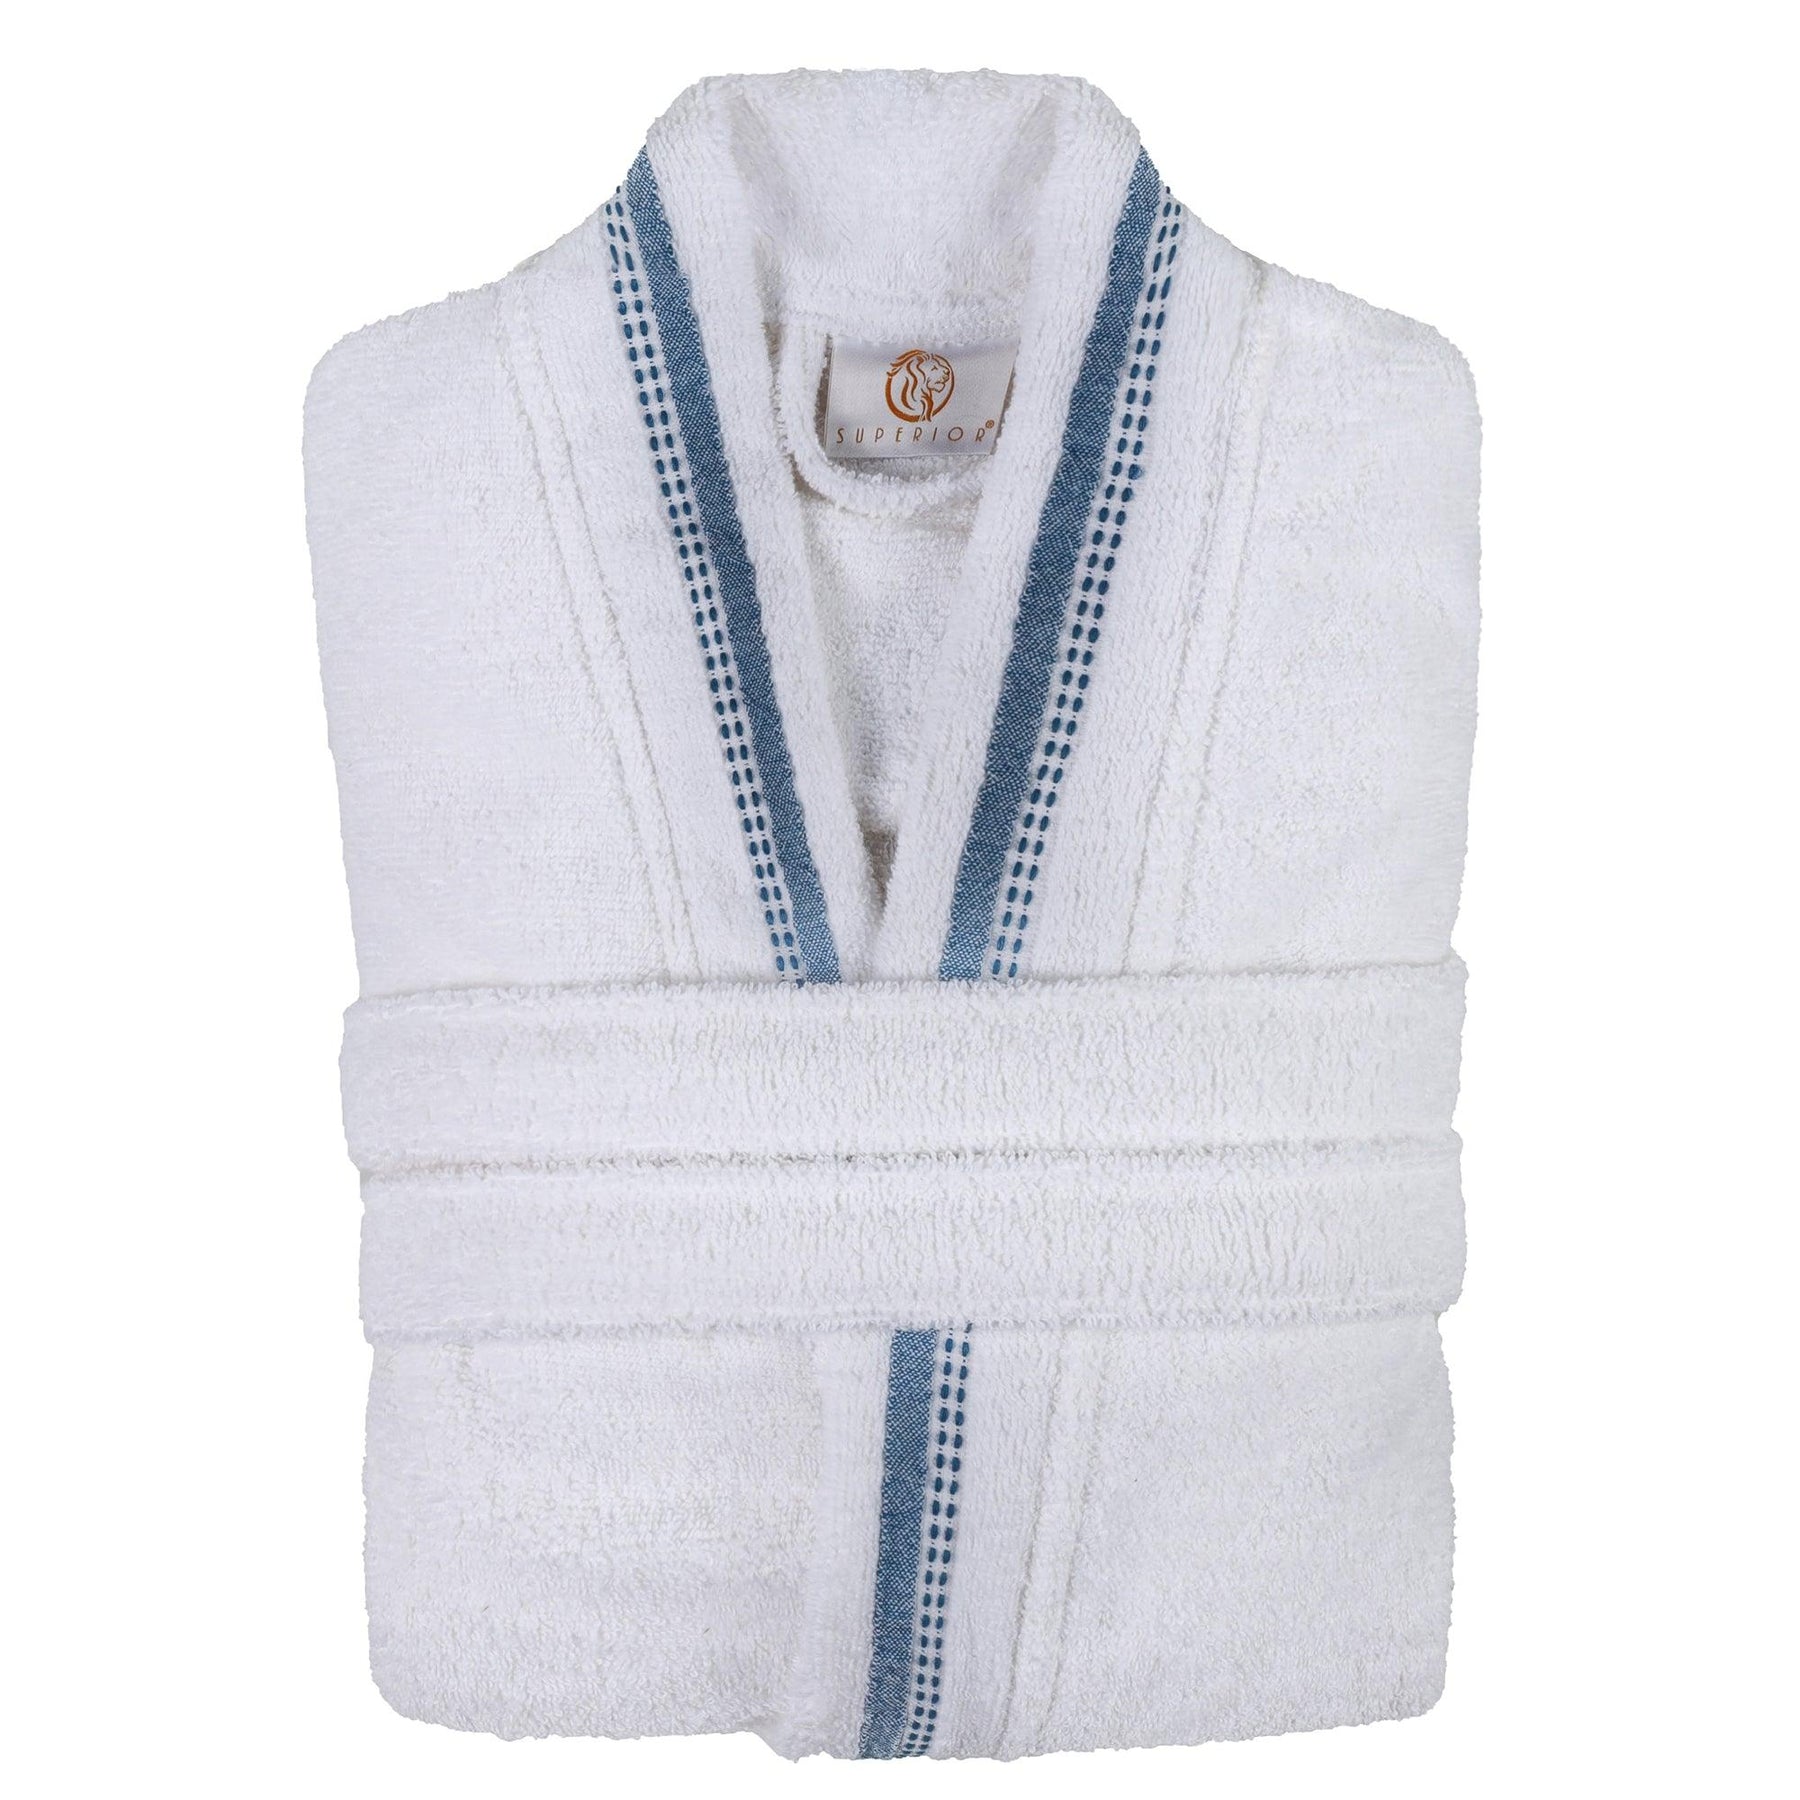  Turkish Cotton Terry Kimono Embroidered Super-Soft Unisex Bathrobe - White-Blue